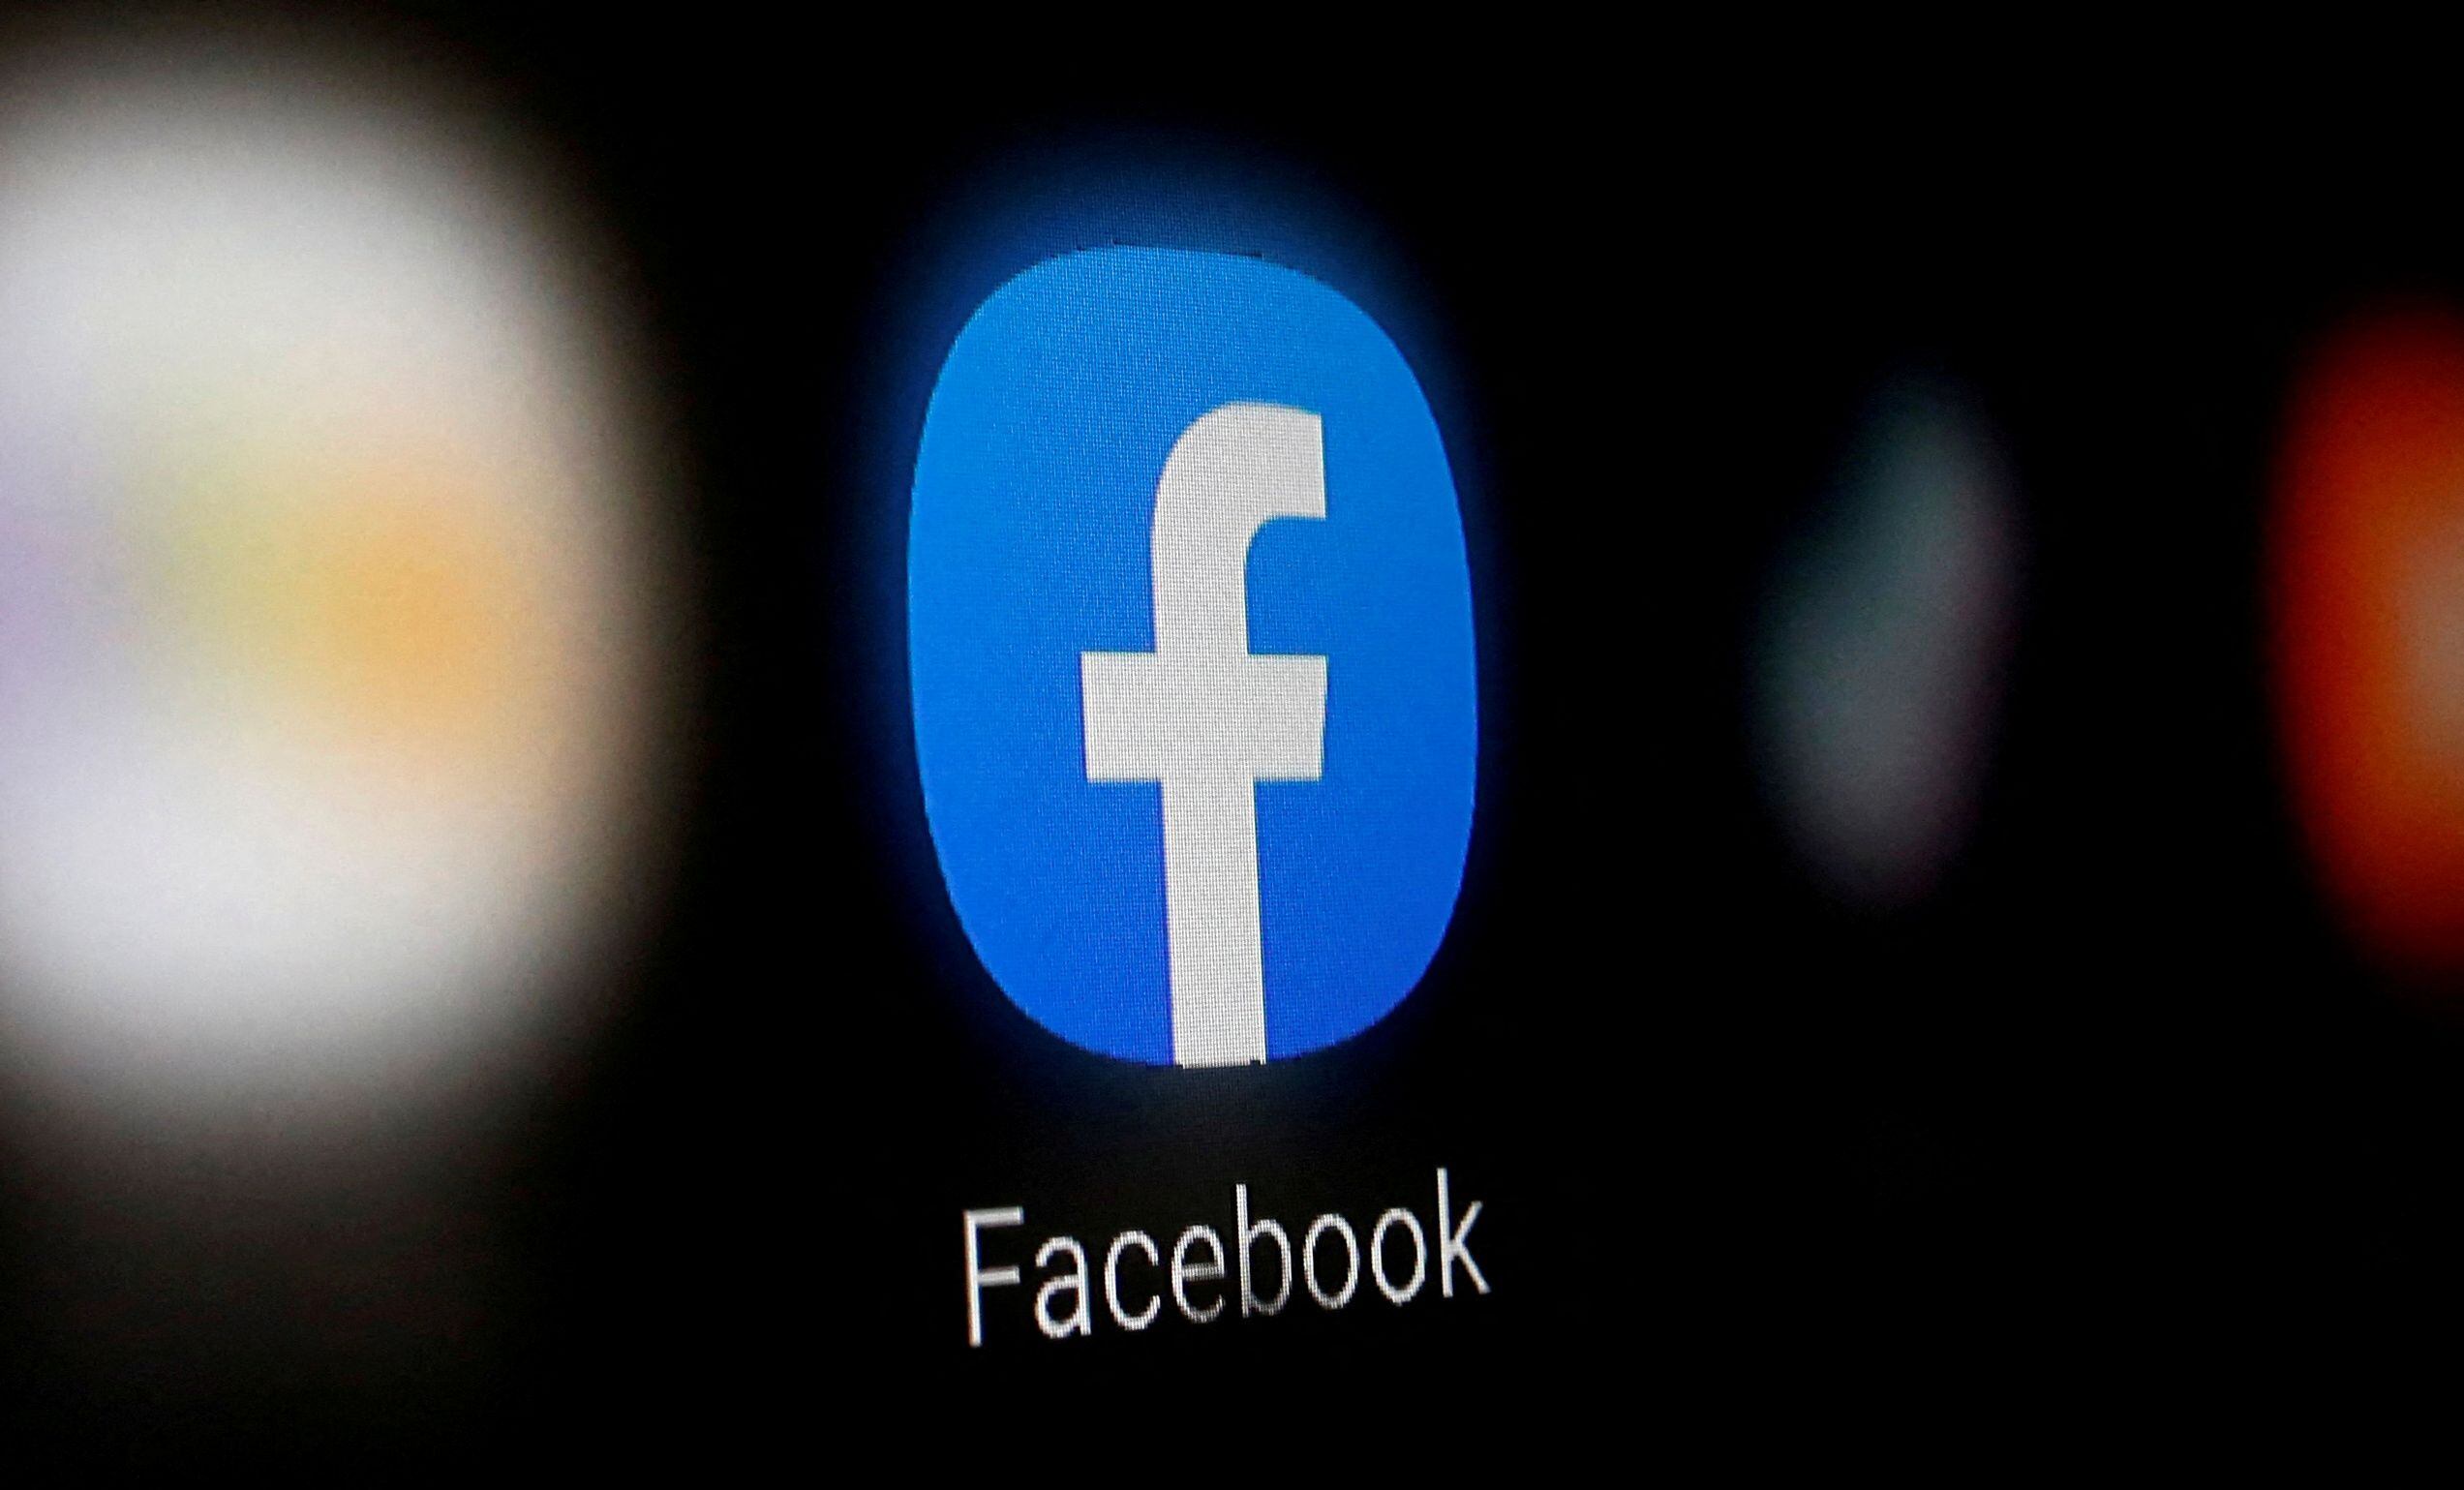 Facebook eliminó cuentas vinculadas a la red de vigilancia  (Foto: REUTERS/Dado Ruvic/Illustration/File Photo)